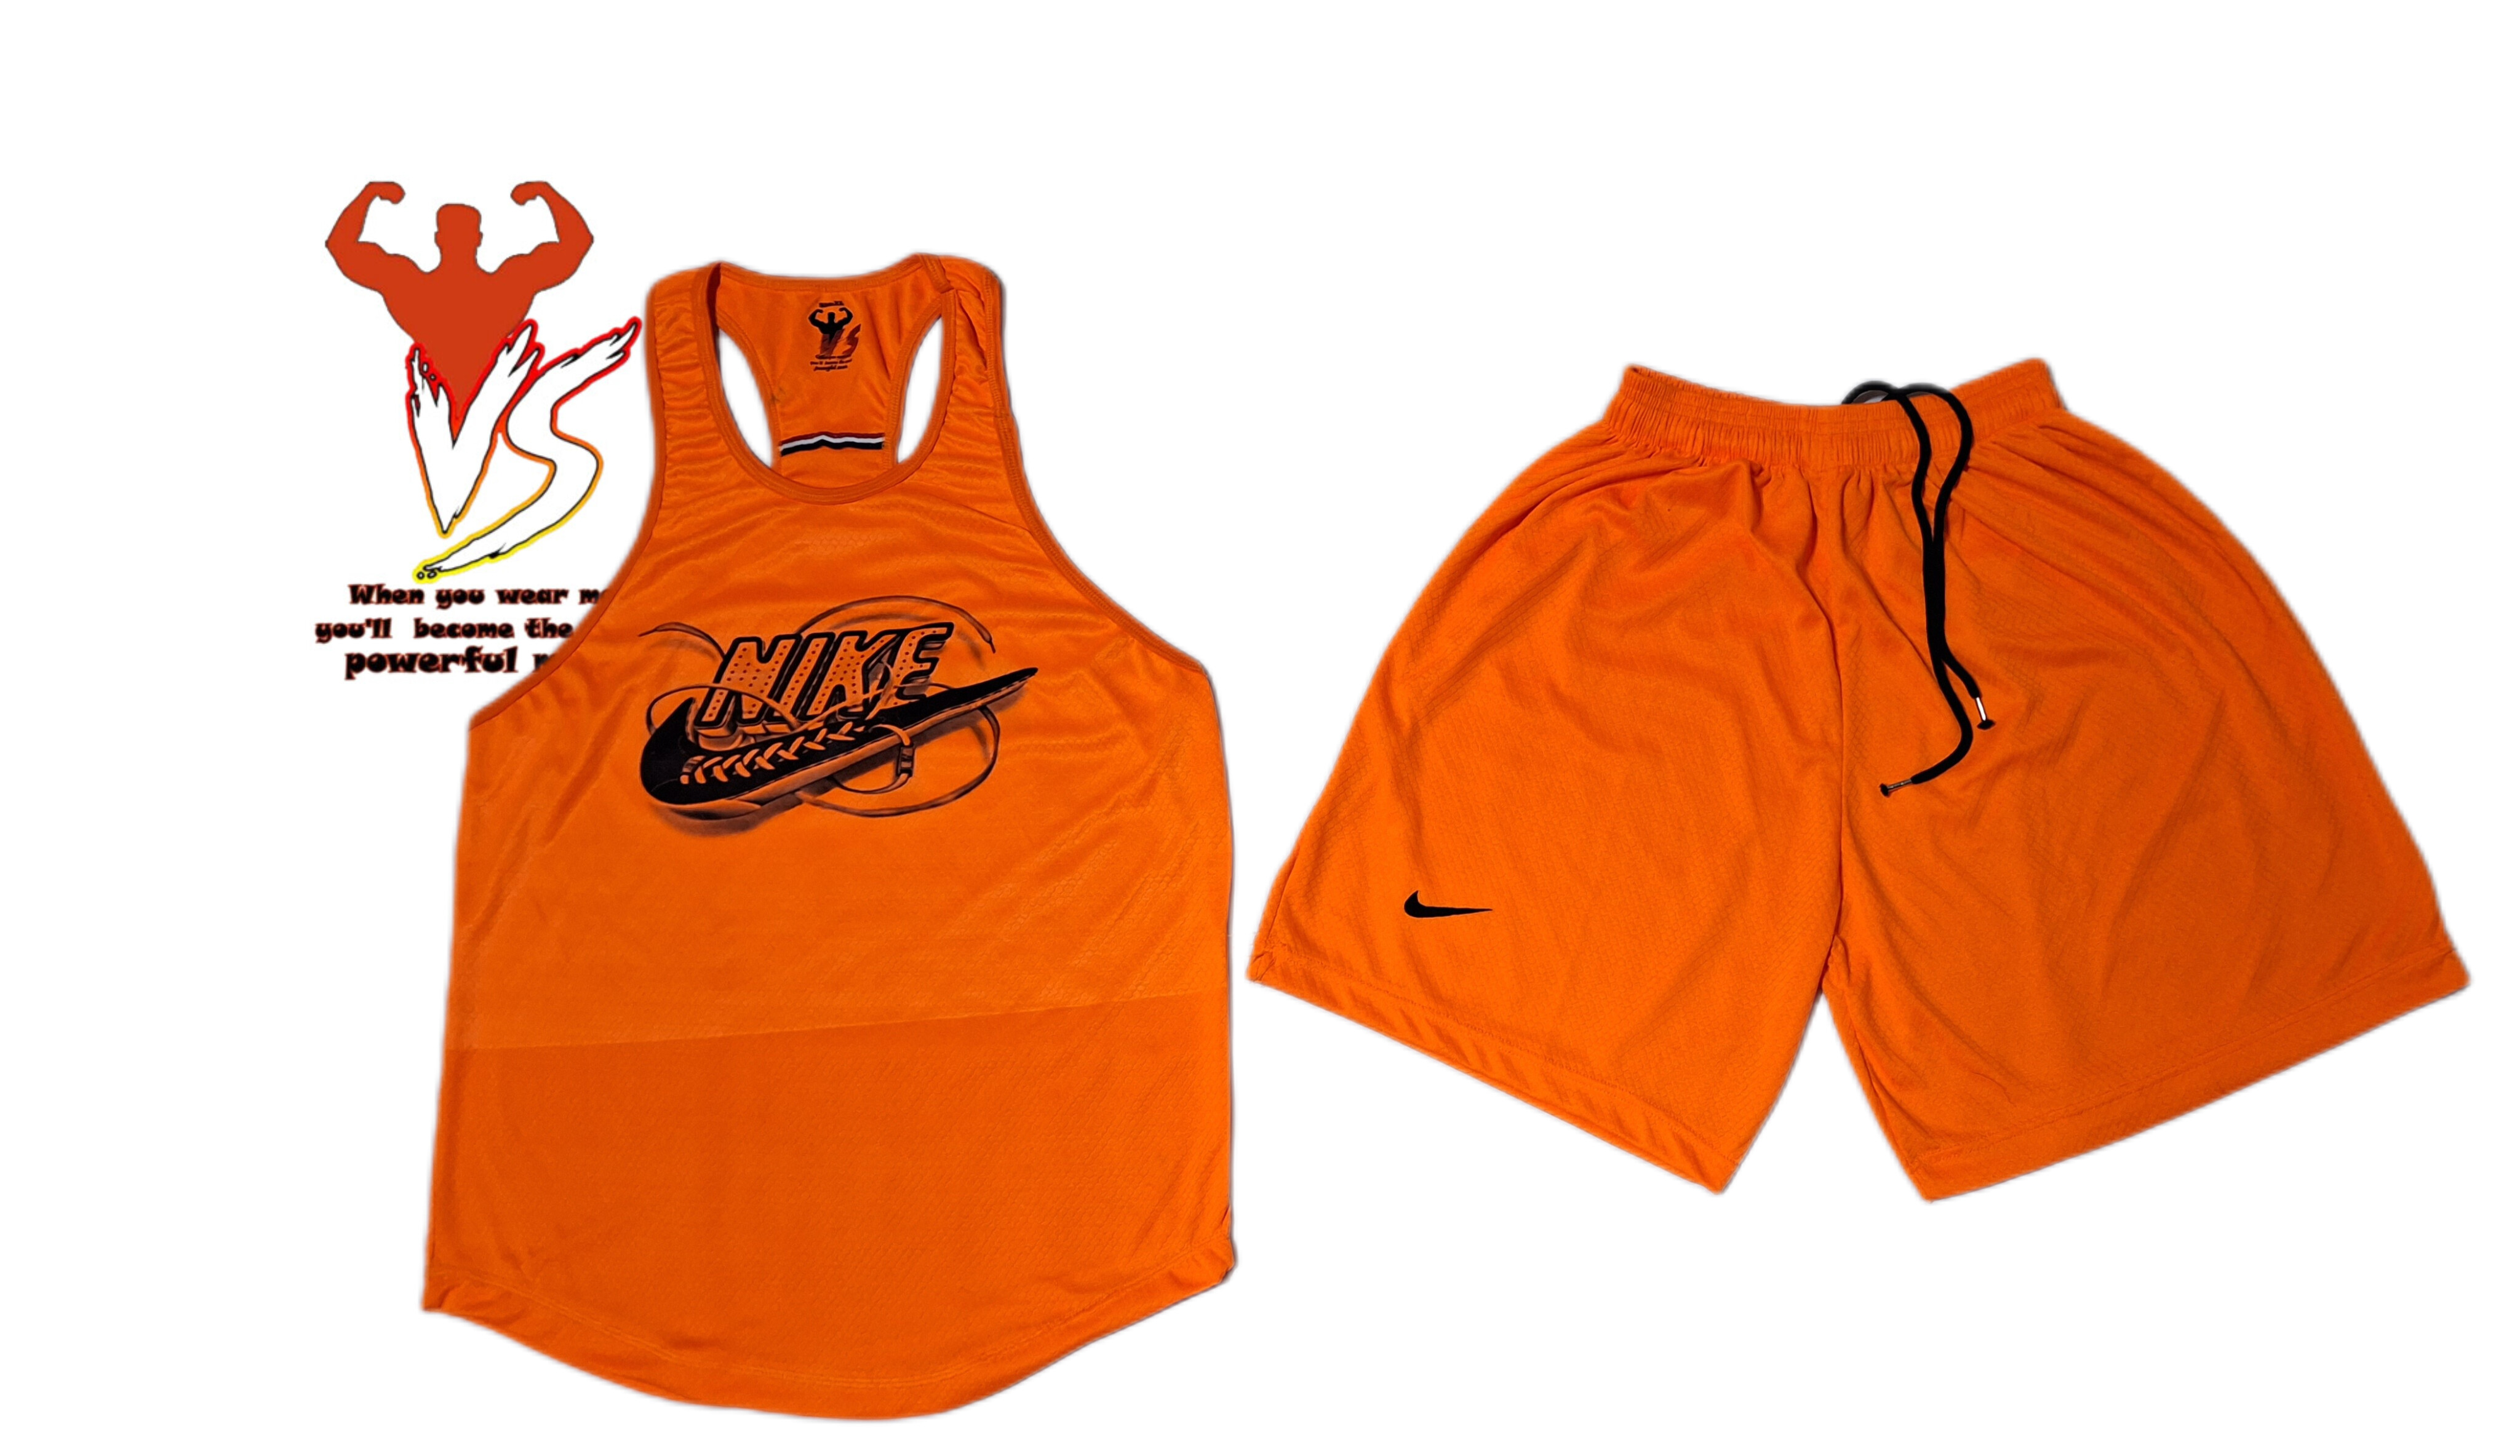 ست رکابی و شلوارک ورزشی مدل نایک کفشی نارنجی فلور